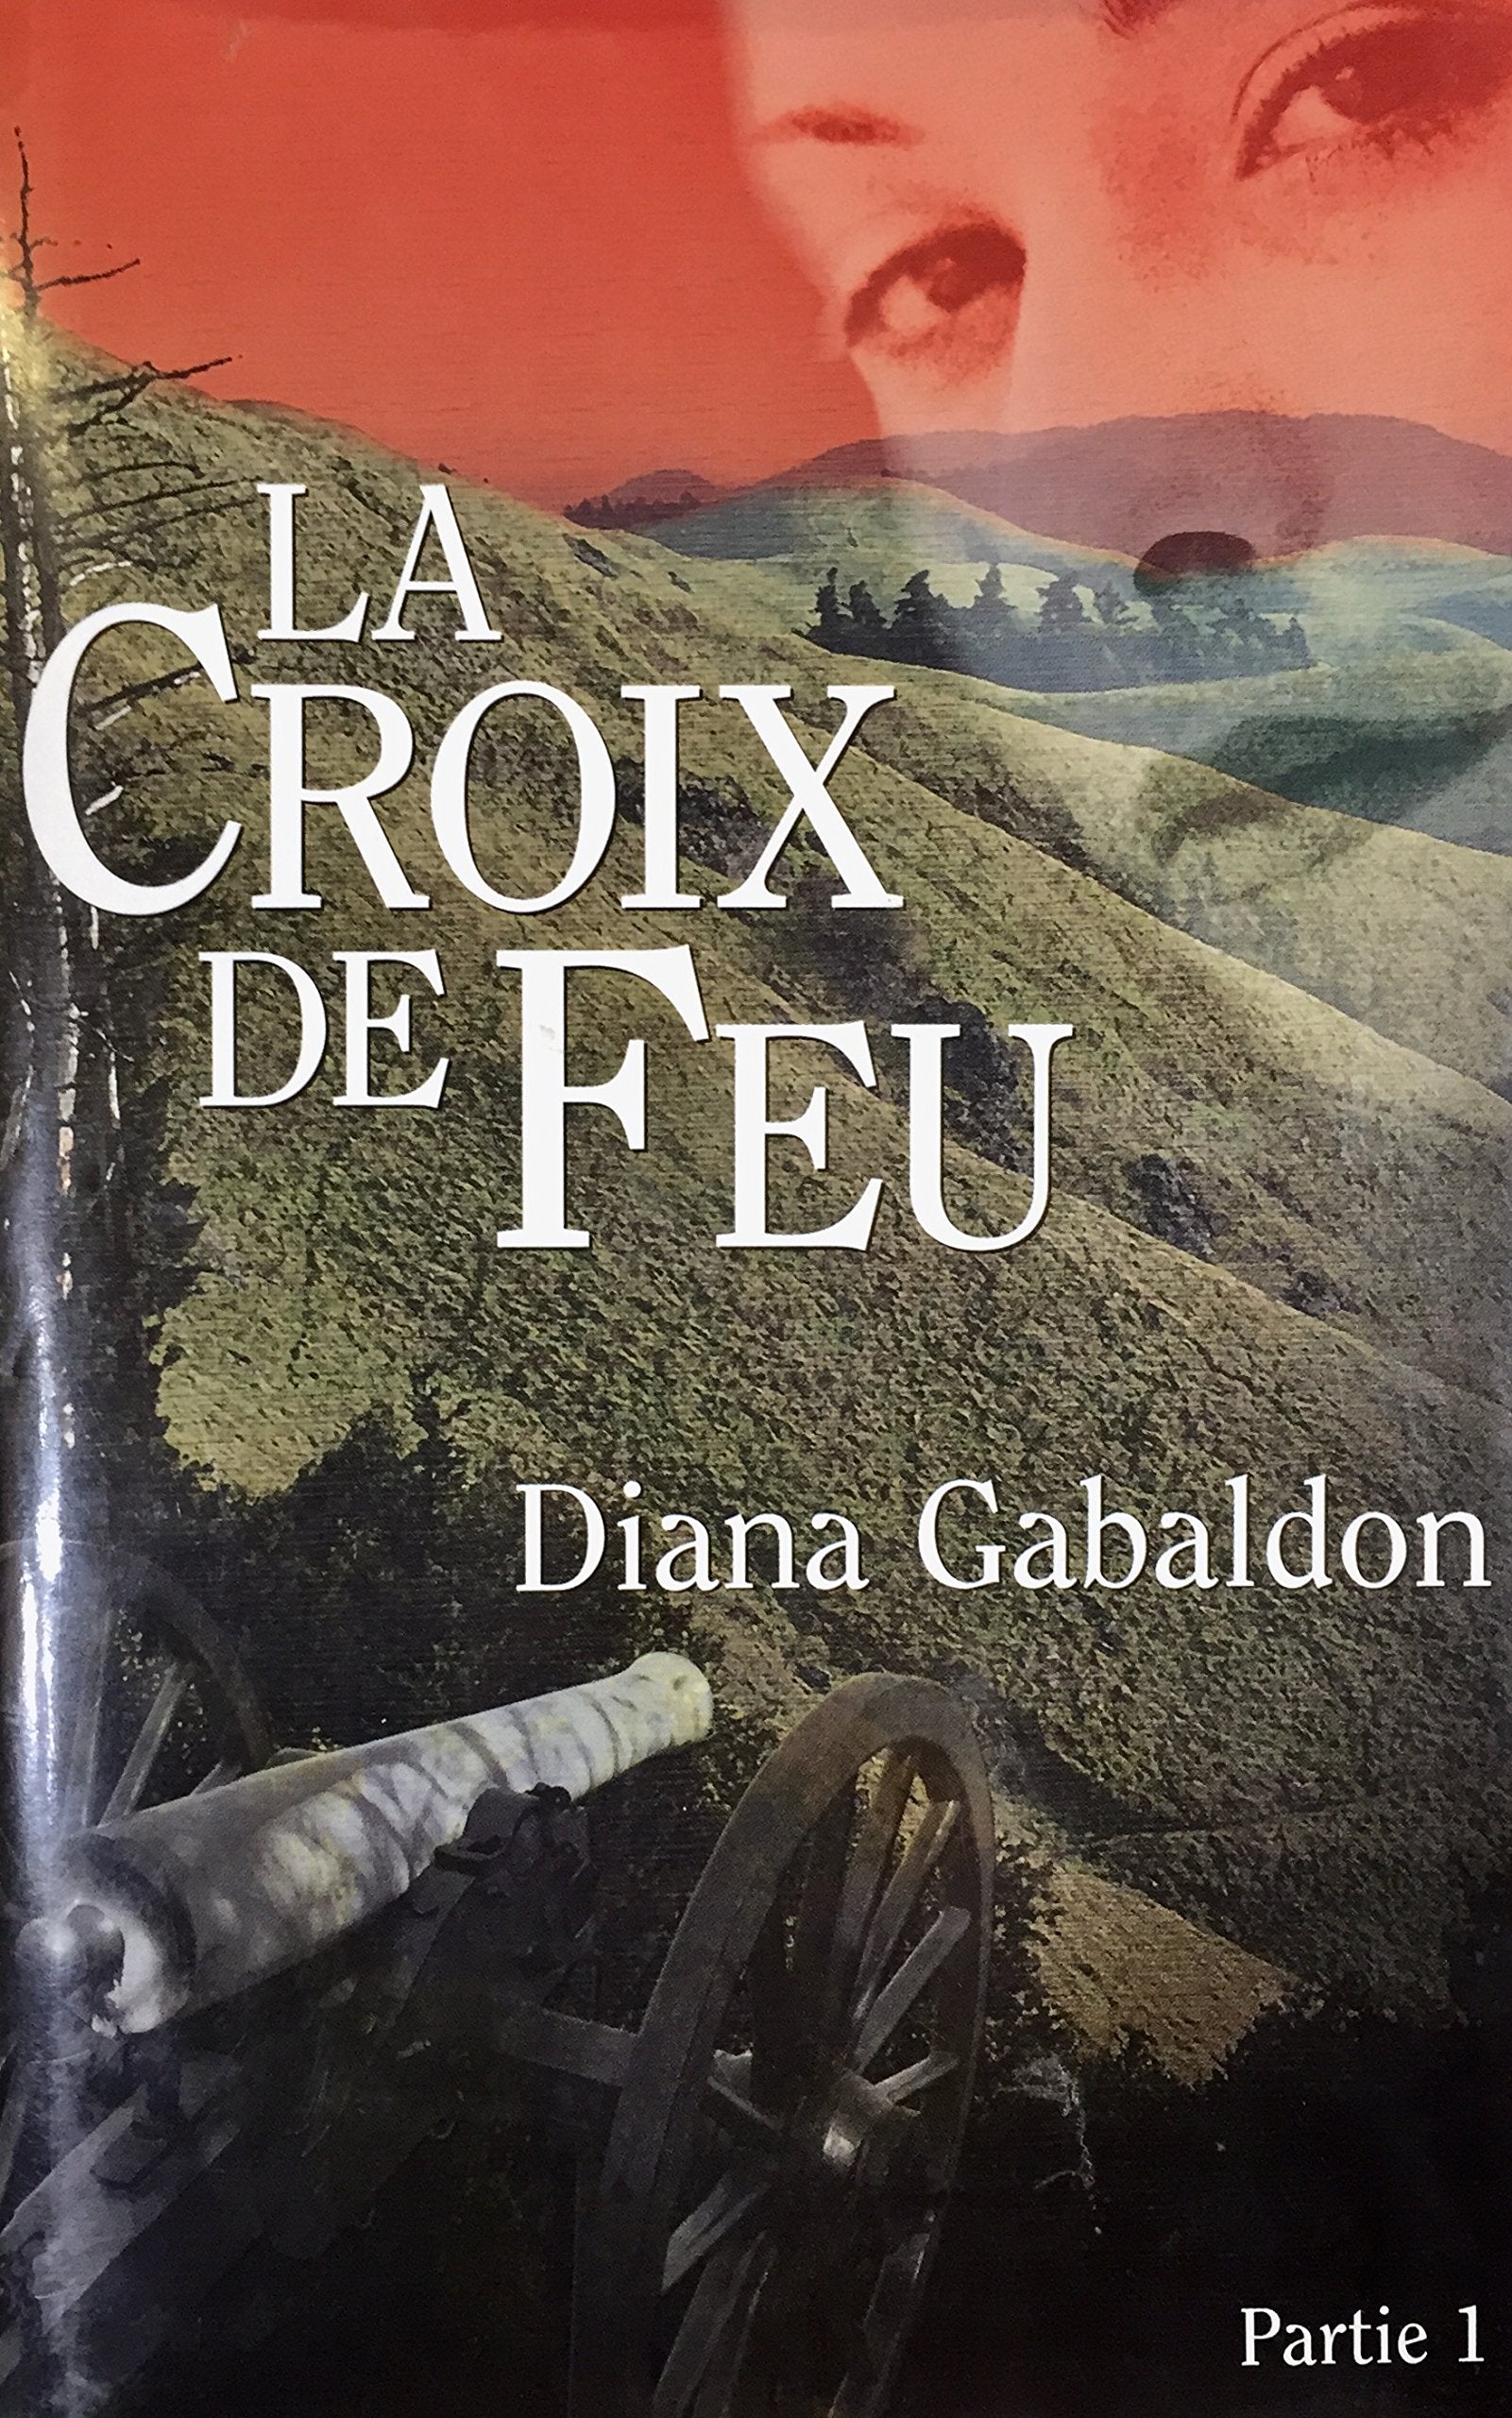 Livre ISBN 2894305508 La croix de feu # Partie 1 (Diana Gabaldon)